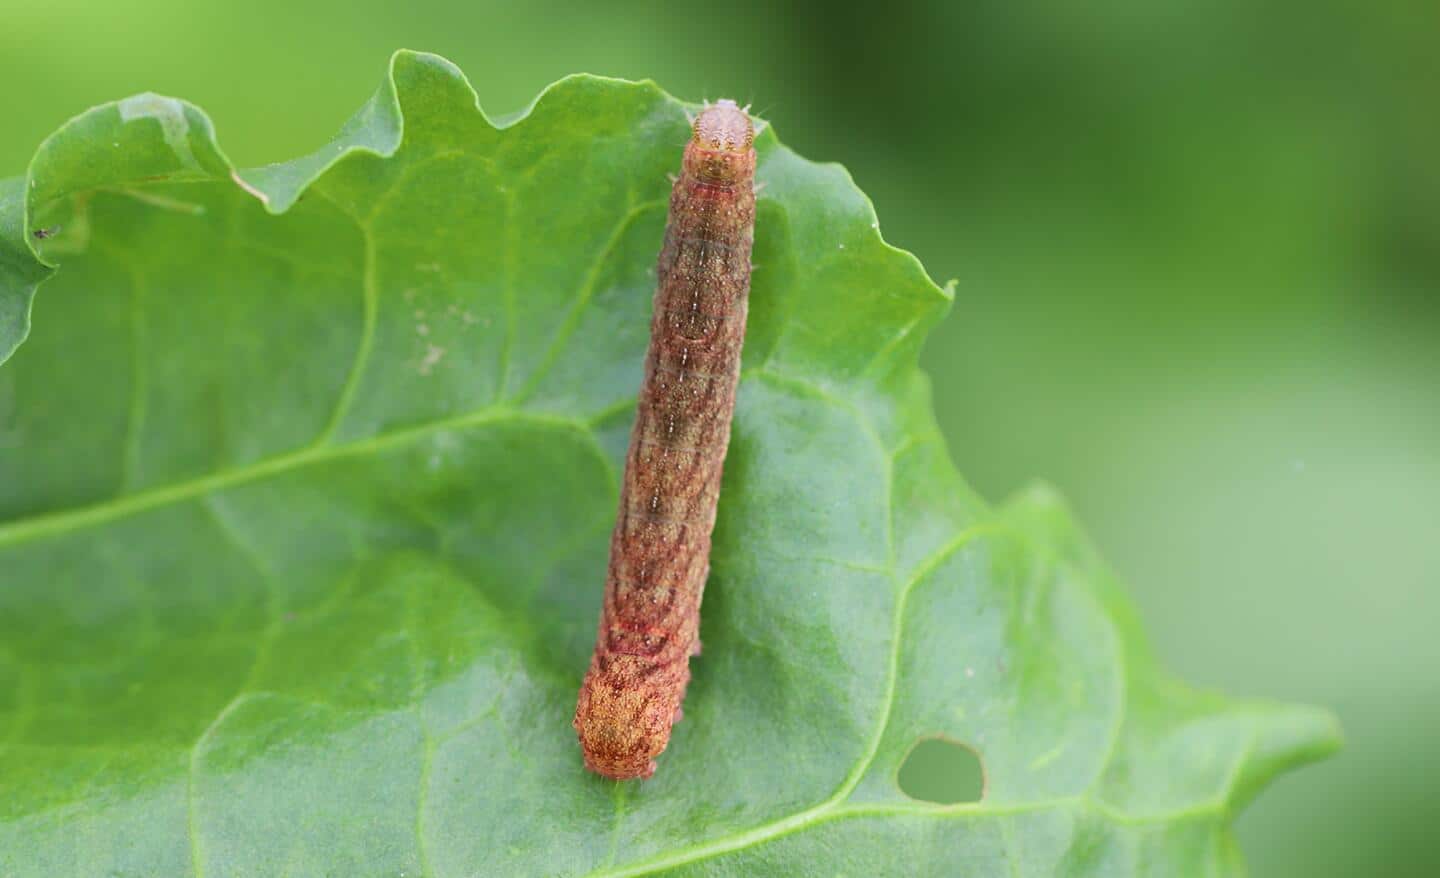 Armyworm on plant leaf